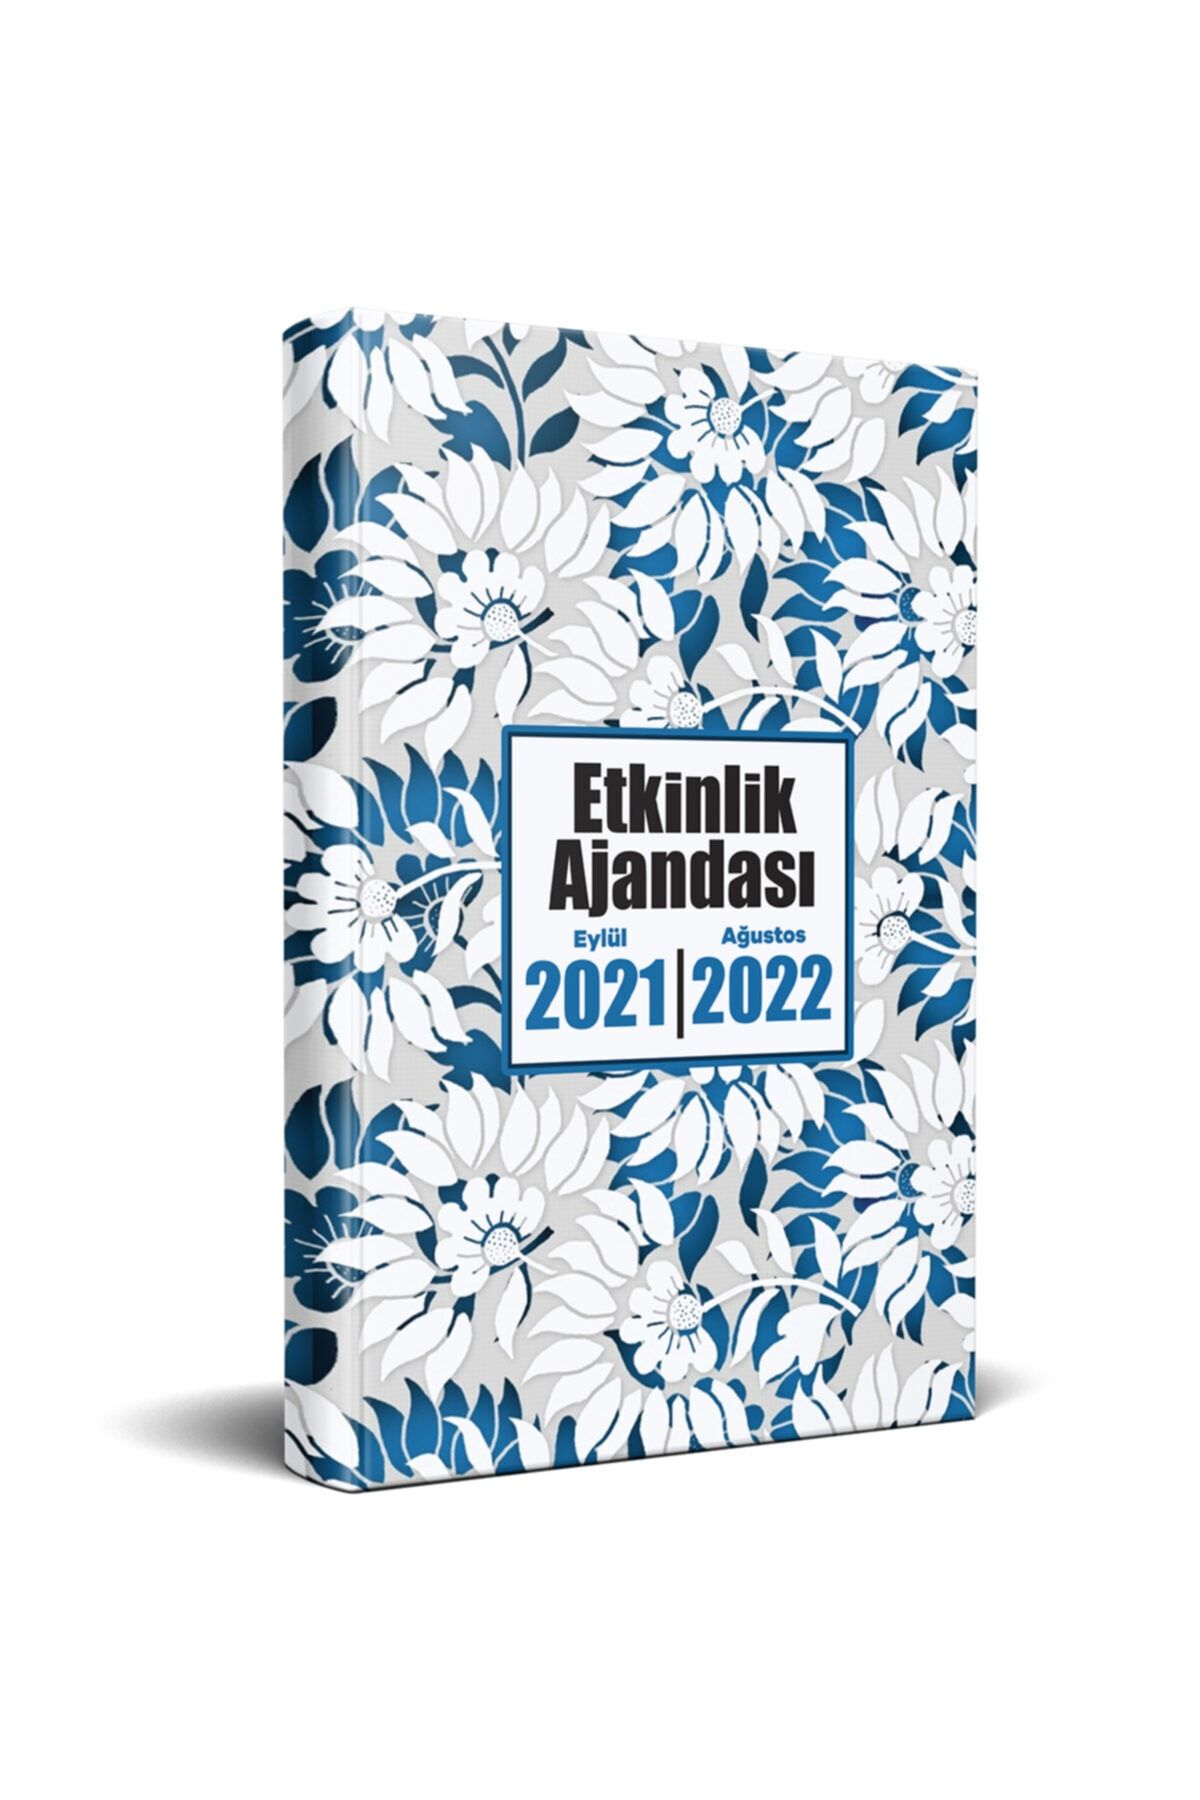 Halk Kitabevi 2021 Eylül-2022 Ağustos Etkinlik Ajandası - Beyaz Bahçe